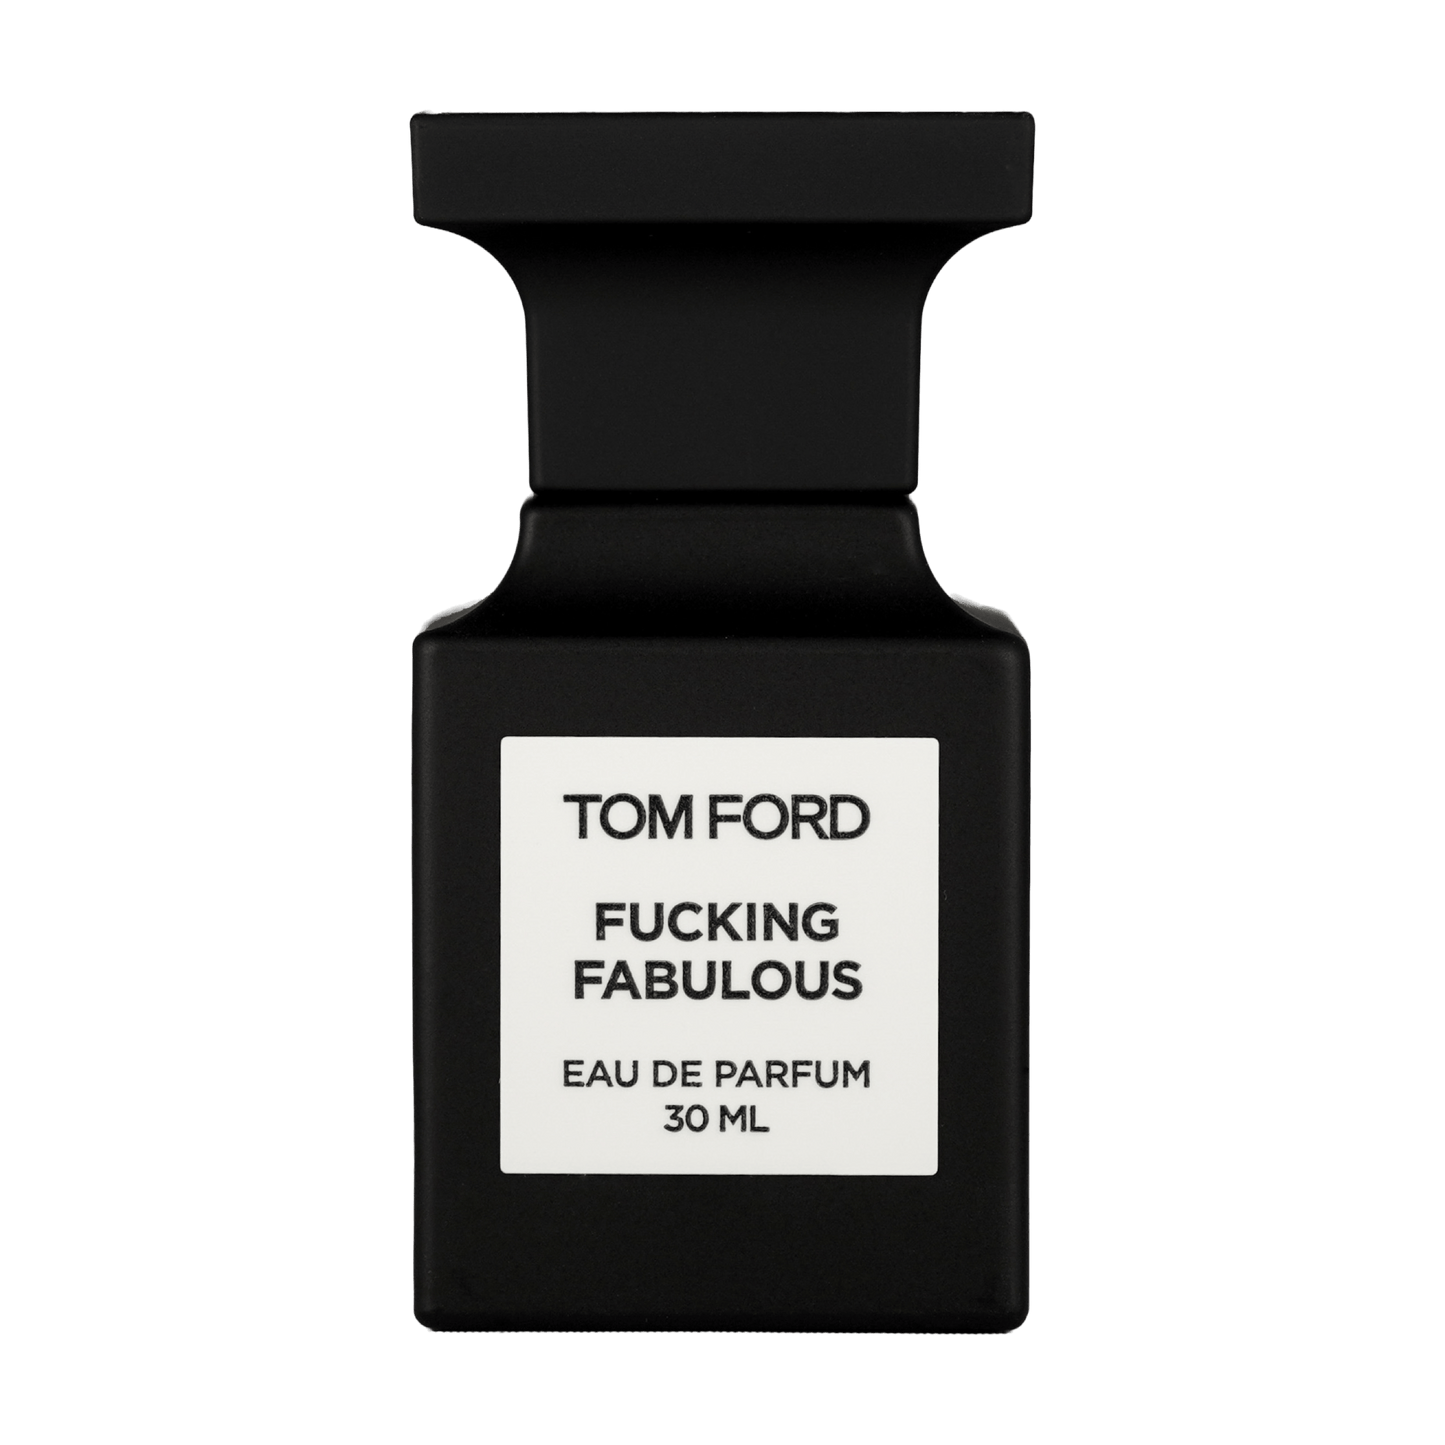 Bild von dem Flakon des Duftes Fucking Fabulous Eau de Parfum von Tom Ford angeboten zum kaufen als Parfümprobe.